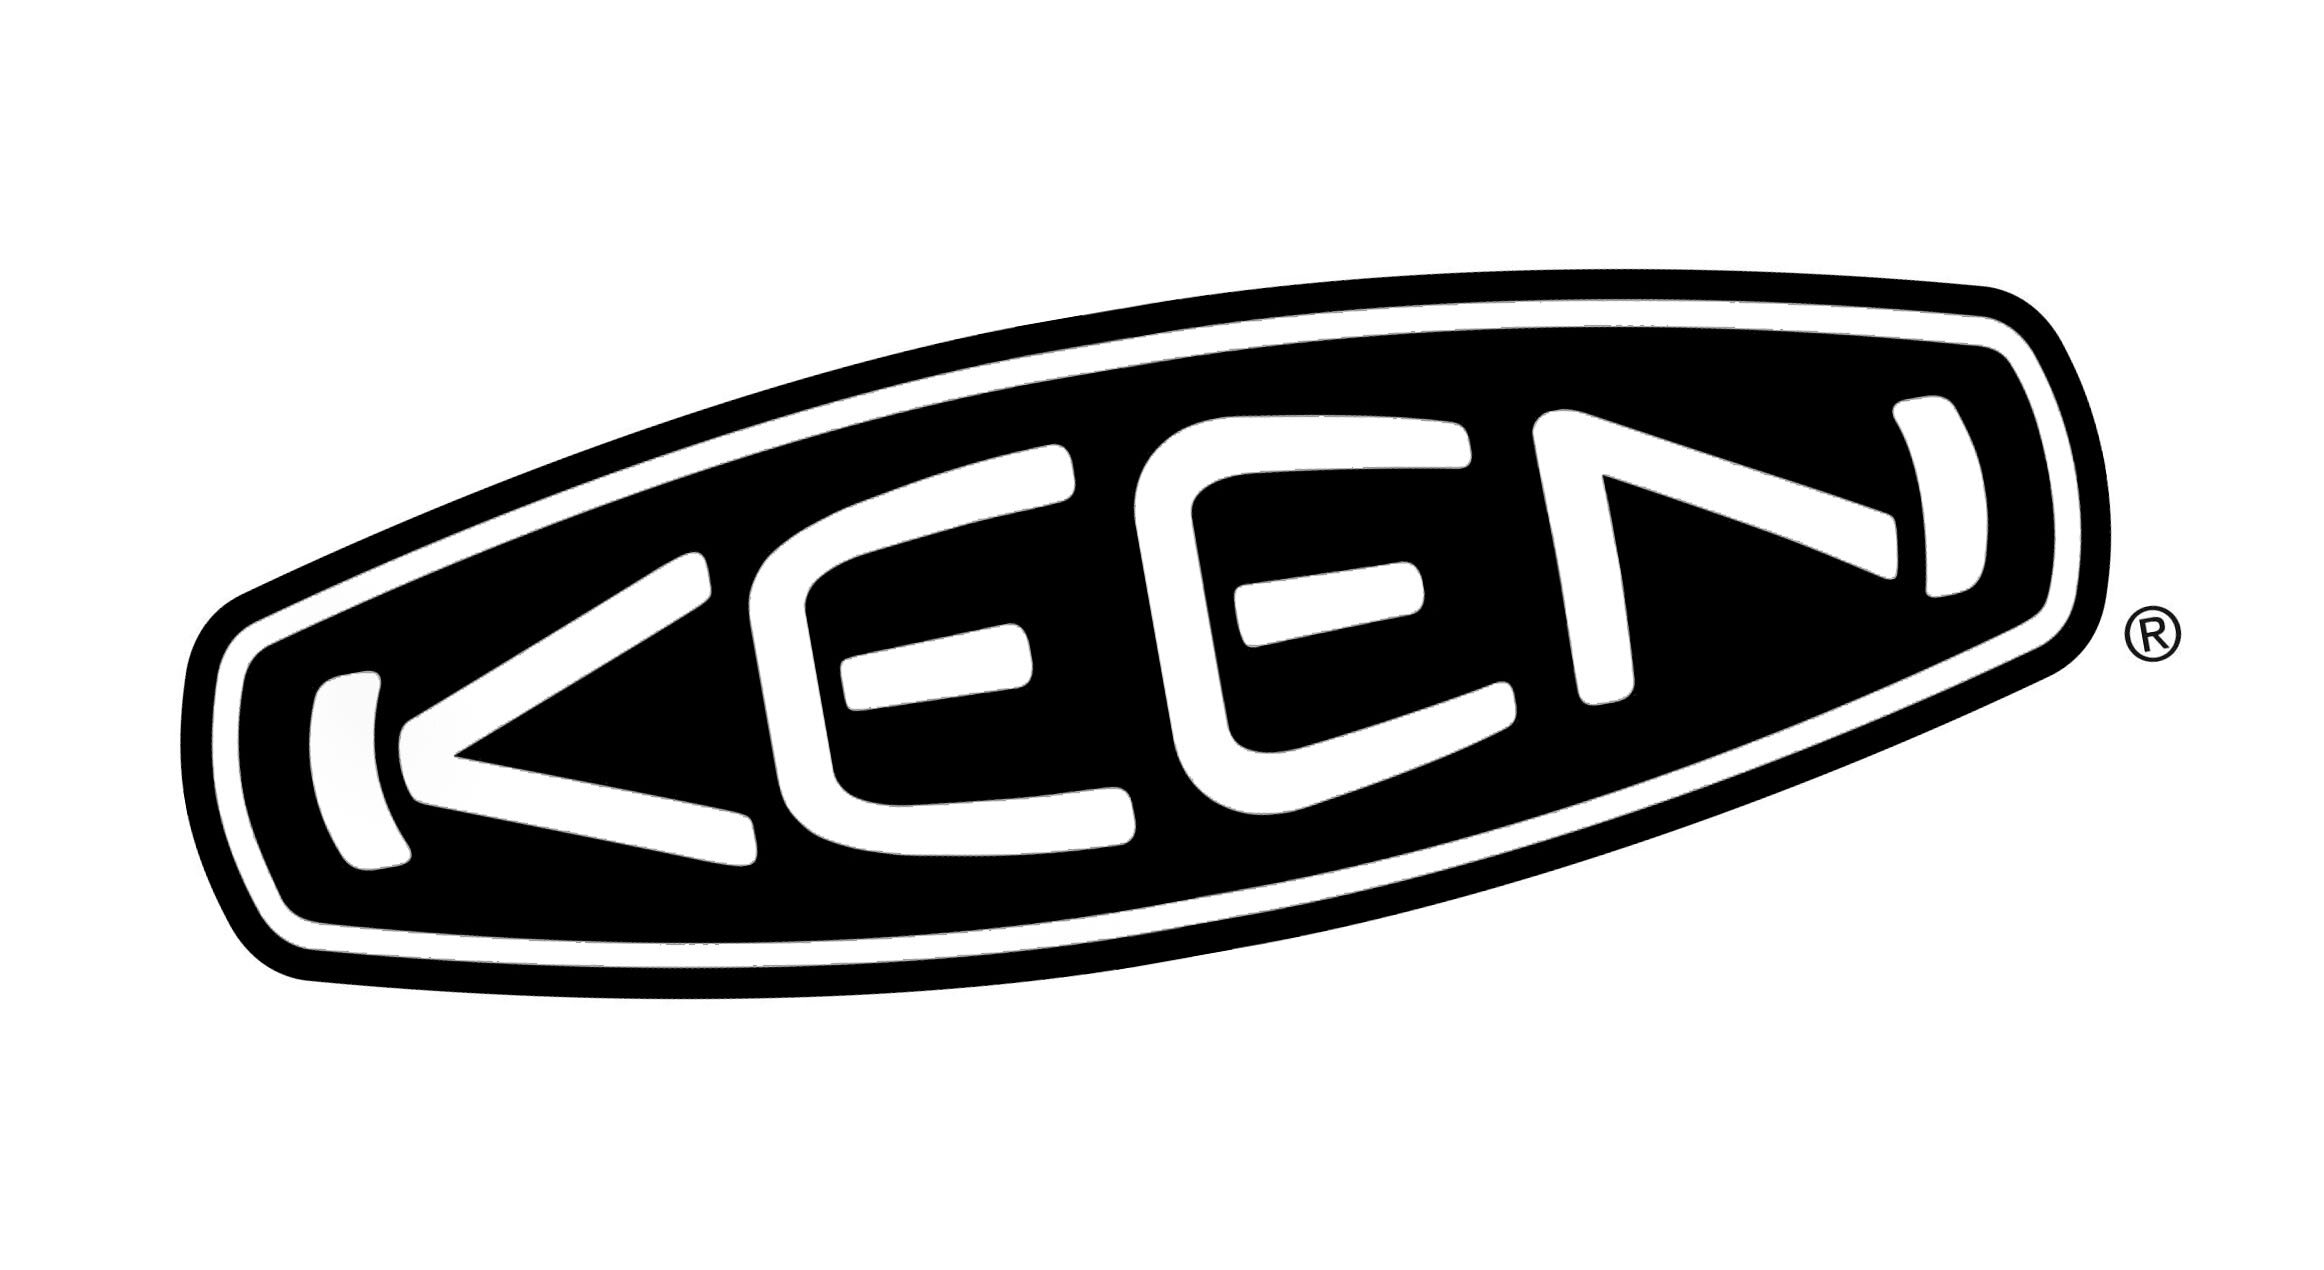 Keen_logo_emblem_rotated.jpg